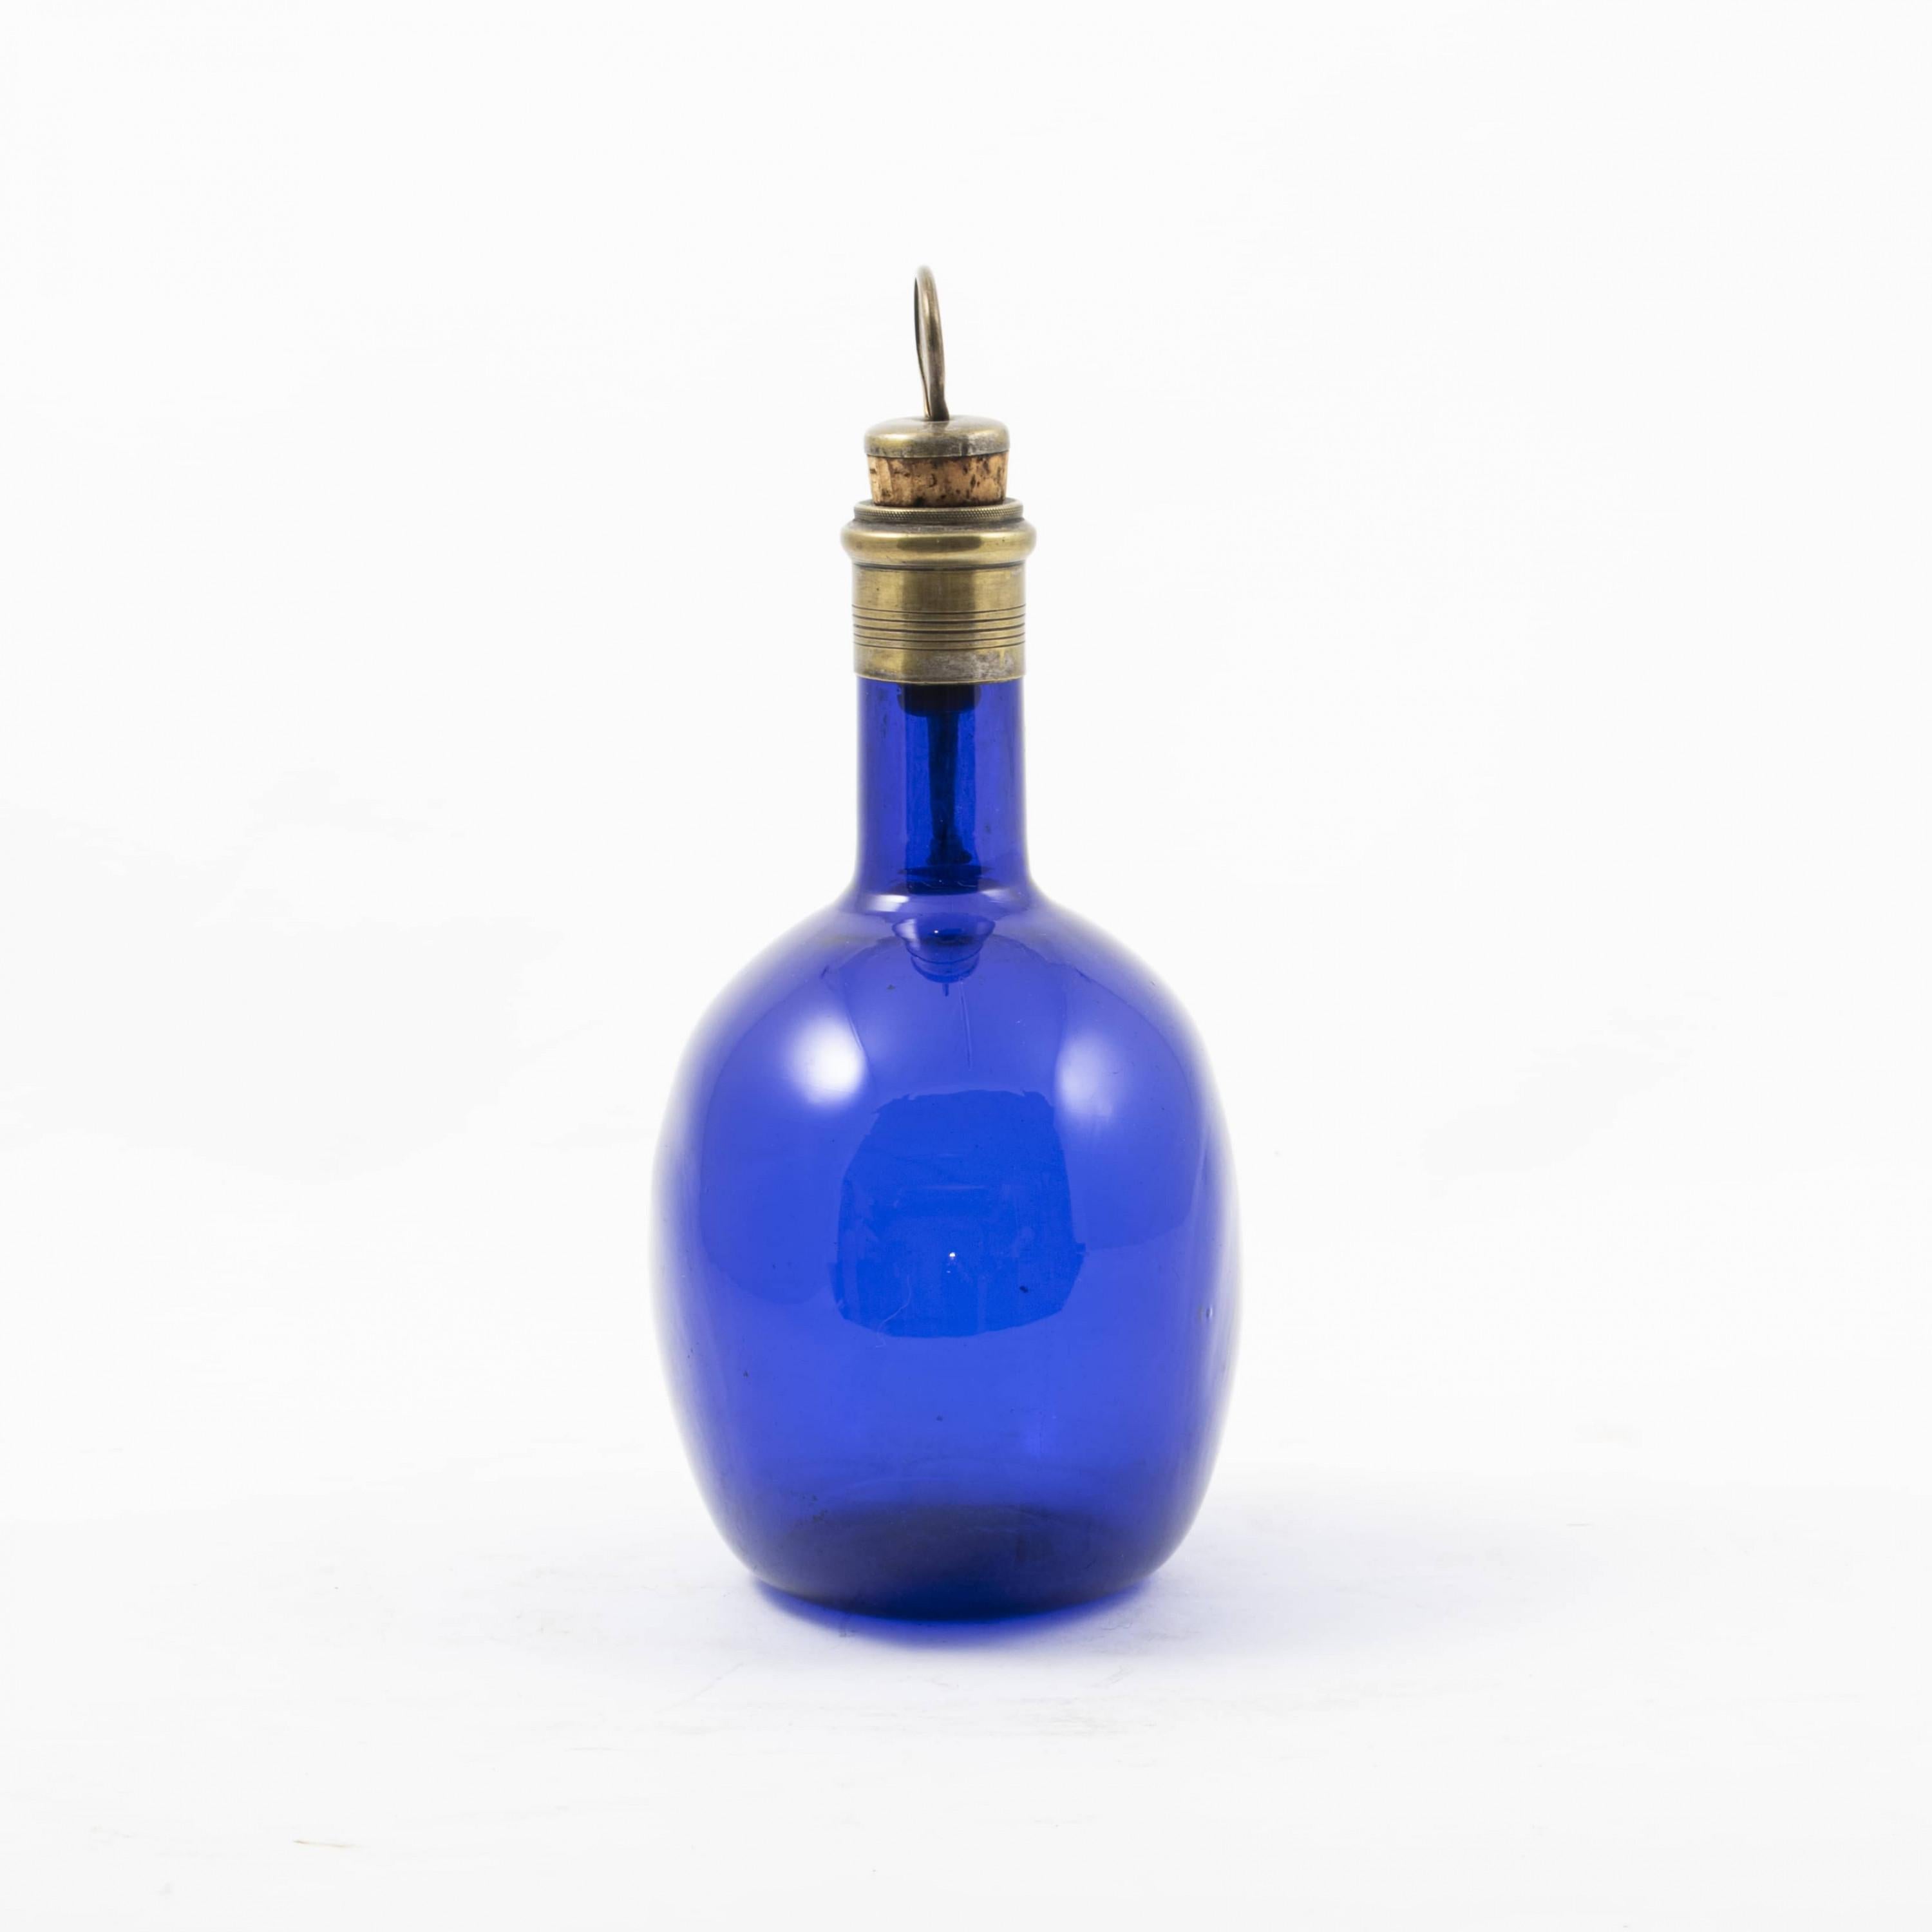 Petite carafe à cognac élégante de style Régence.
Corps ovale en verre bleu avec col et poignée en bronze en forme de grue. Bouchon original avec un signe 